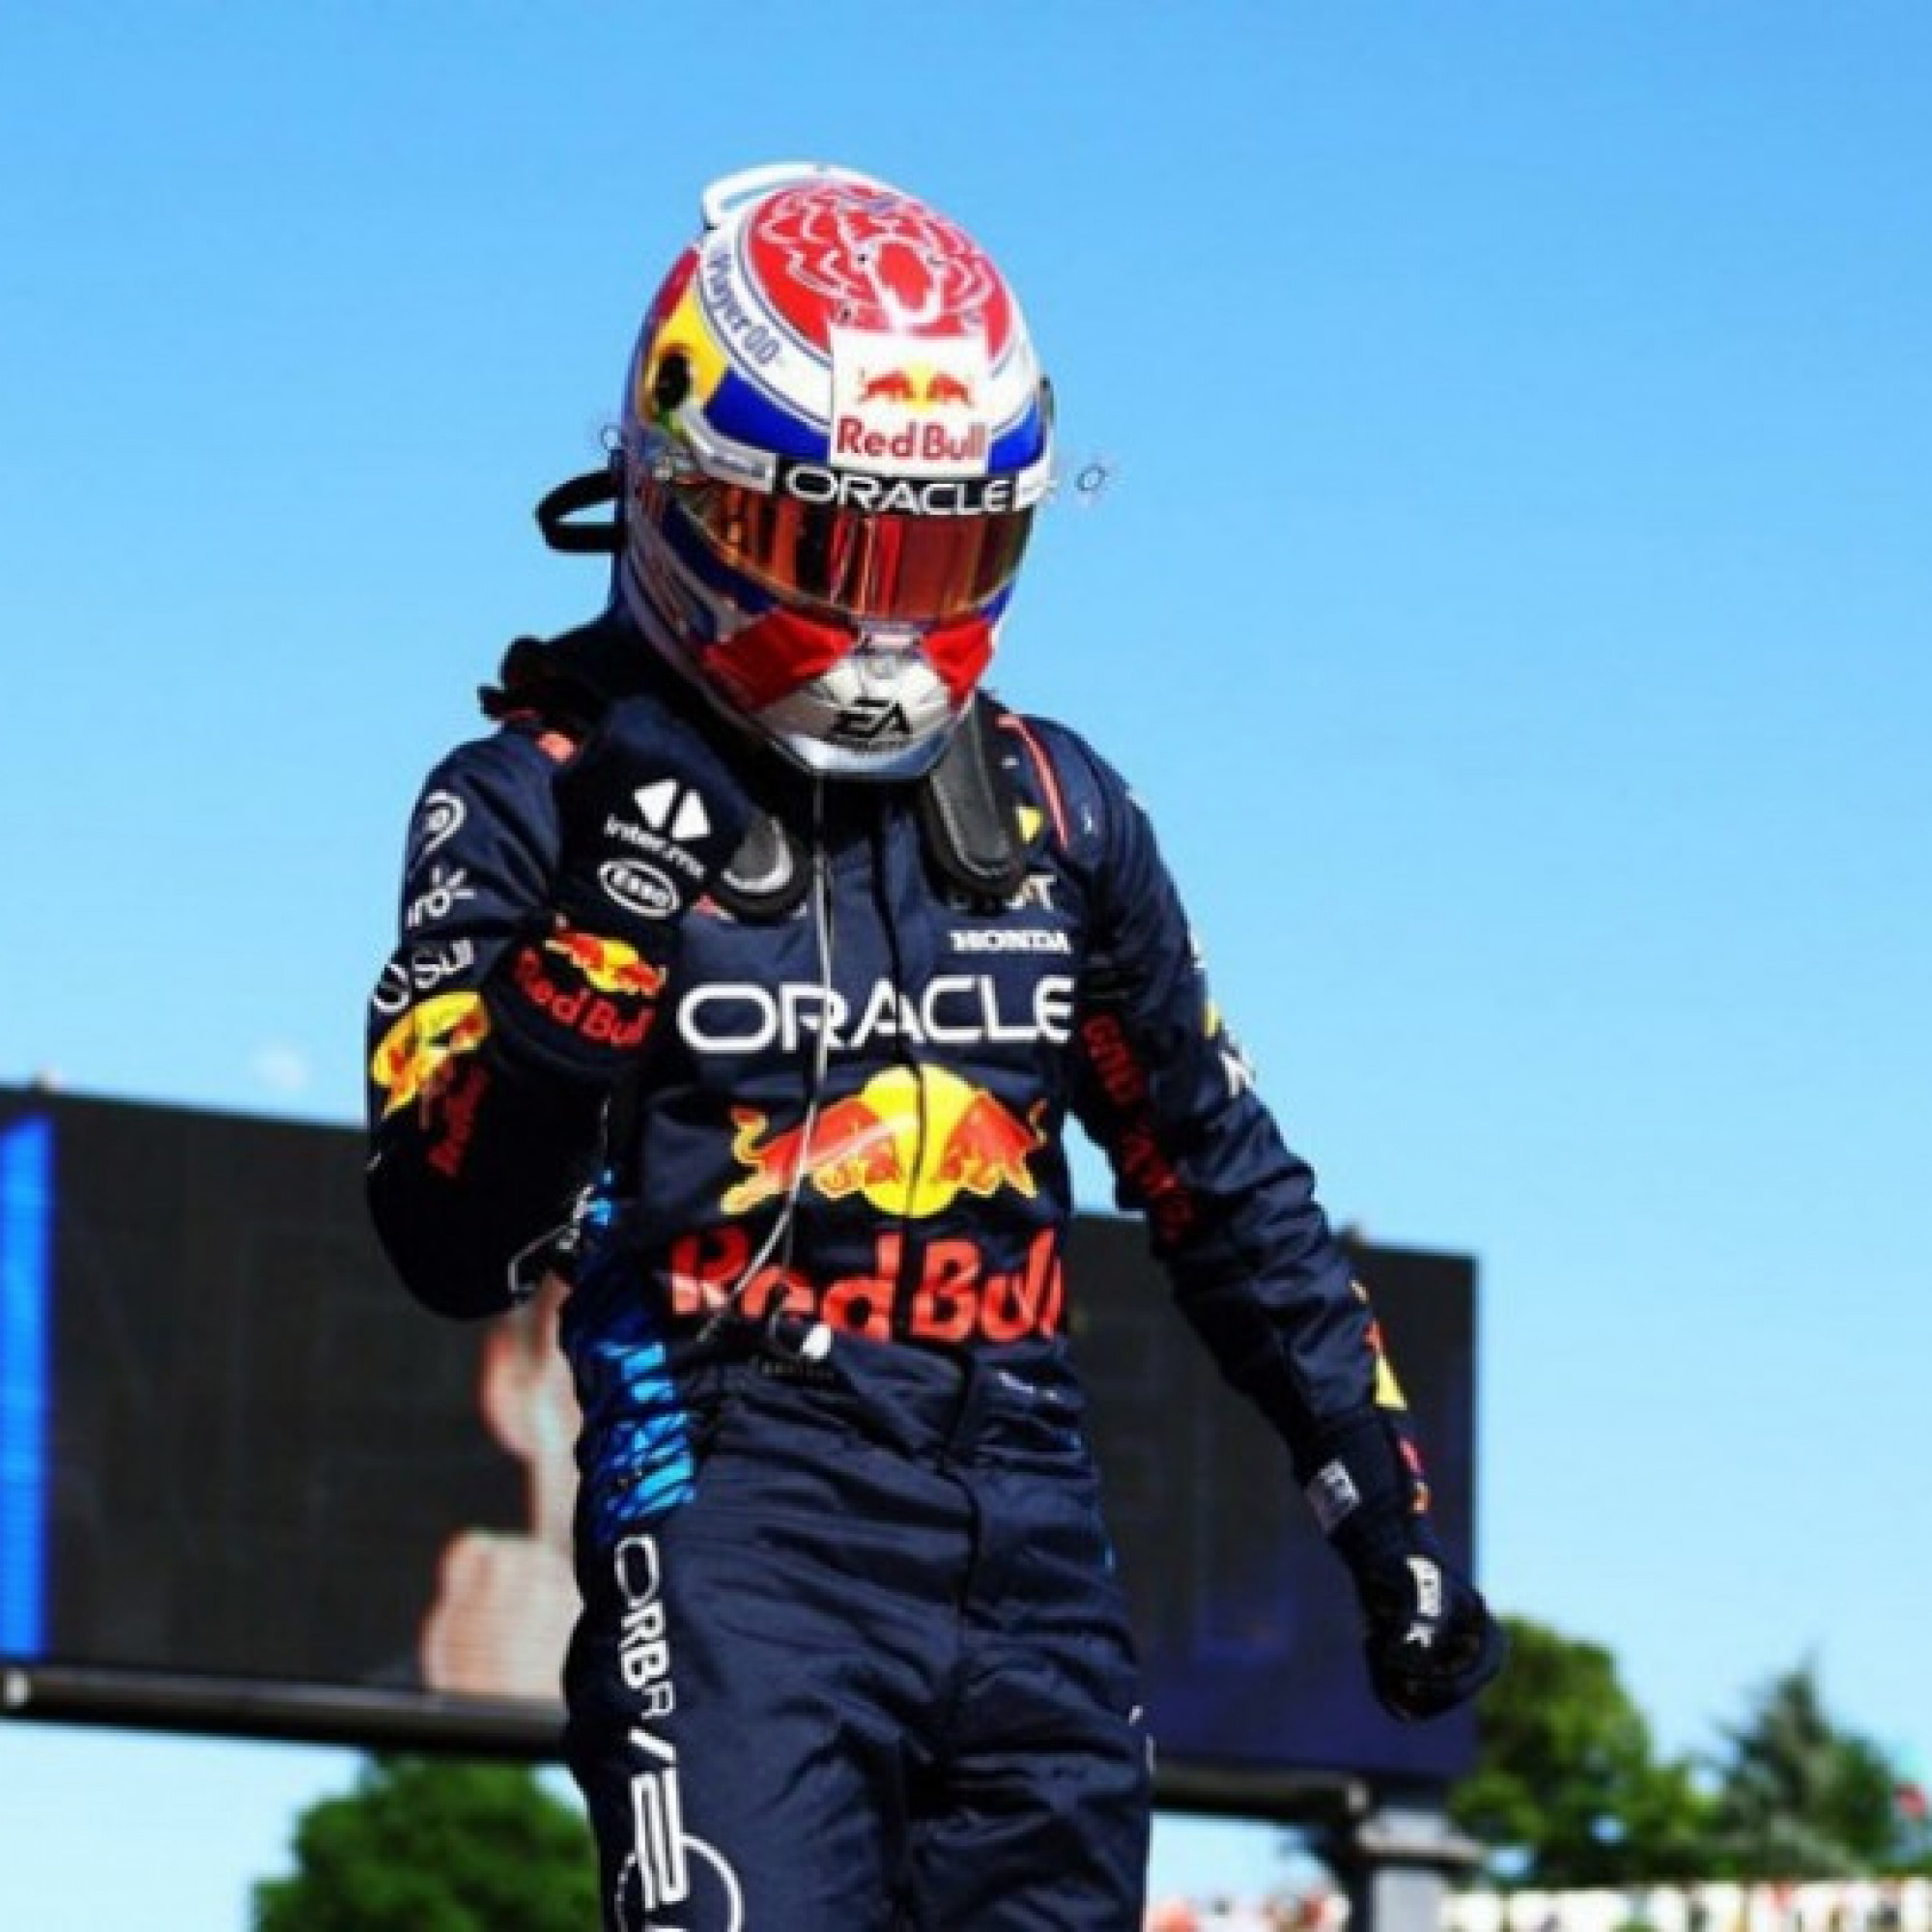  - Đua xe F1 Emilia Romagna GP: Verstappen san bằng kỉ lục với huyền thoại Senna